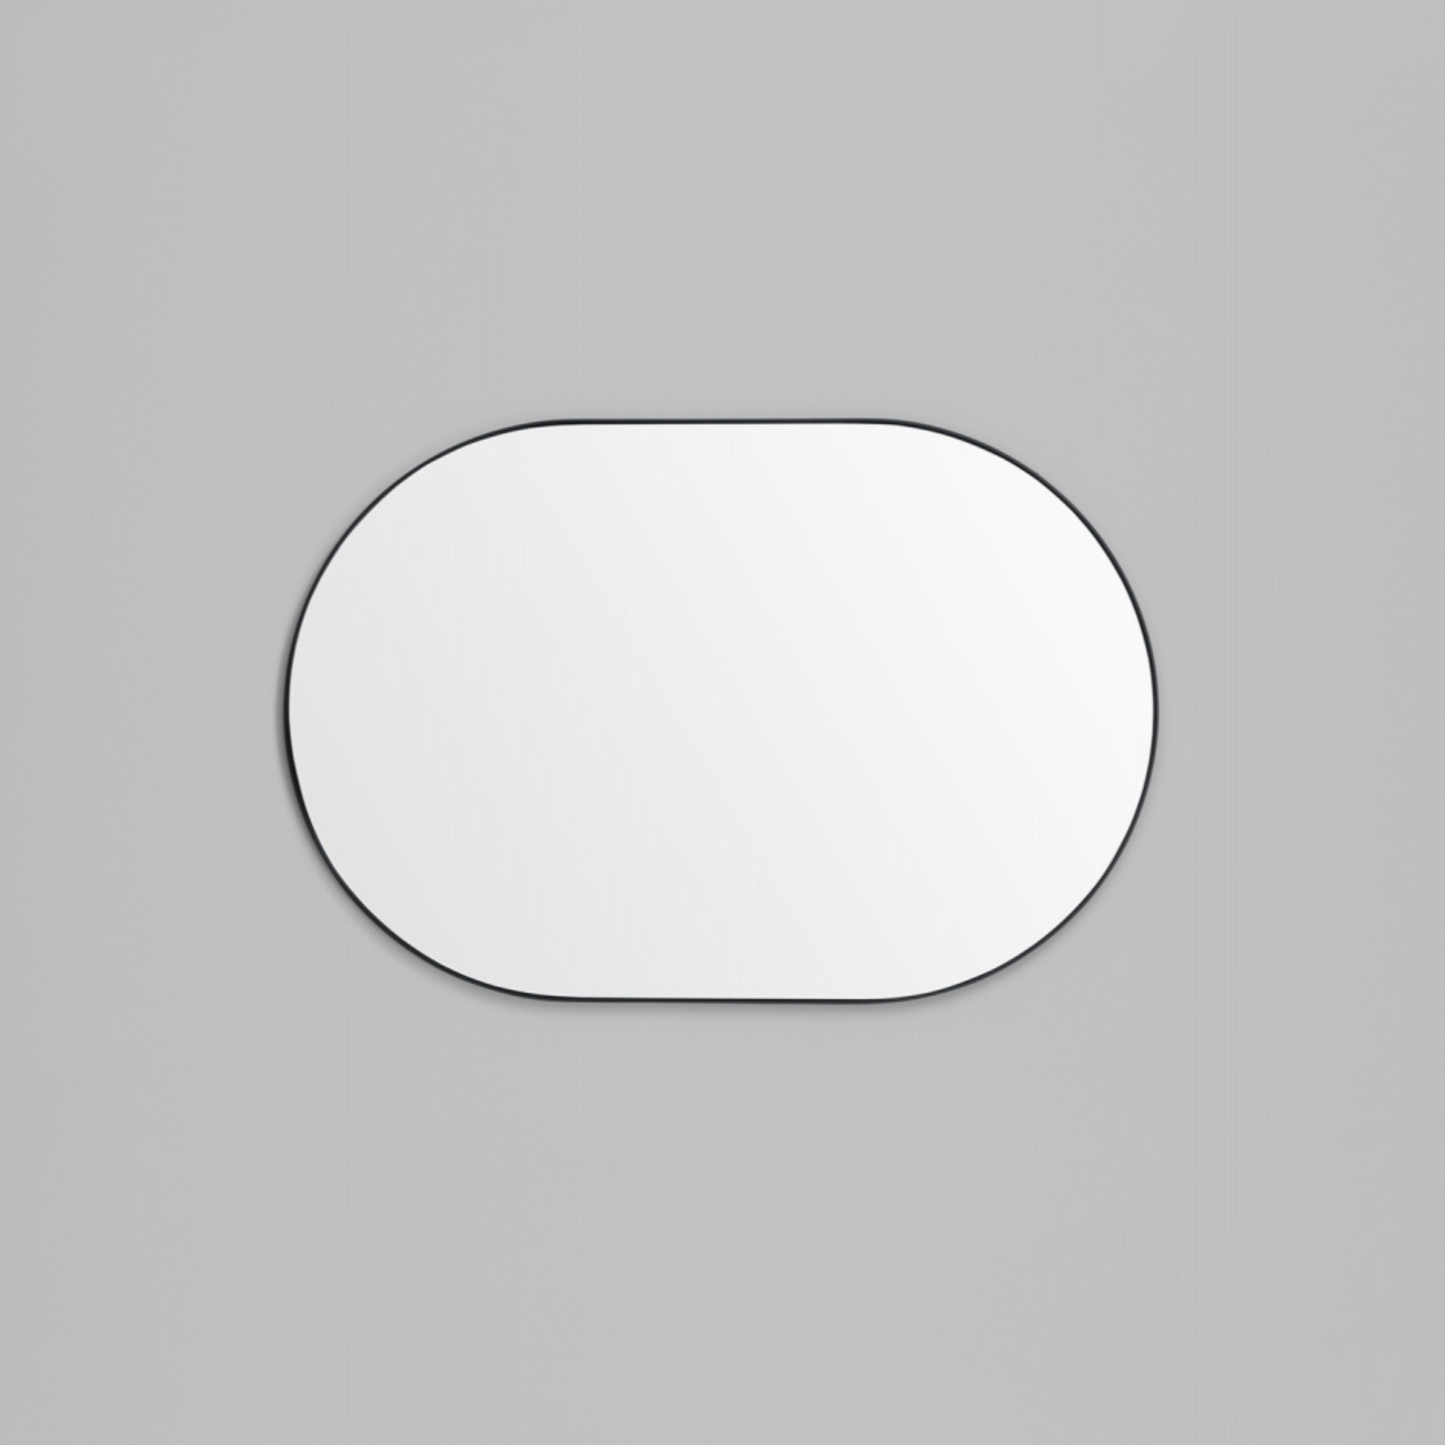 Bjorn Oval Mirror - Black 65cm x 100cm